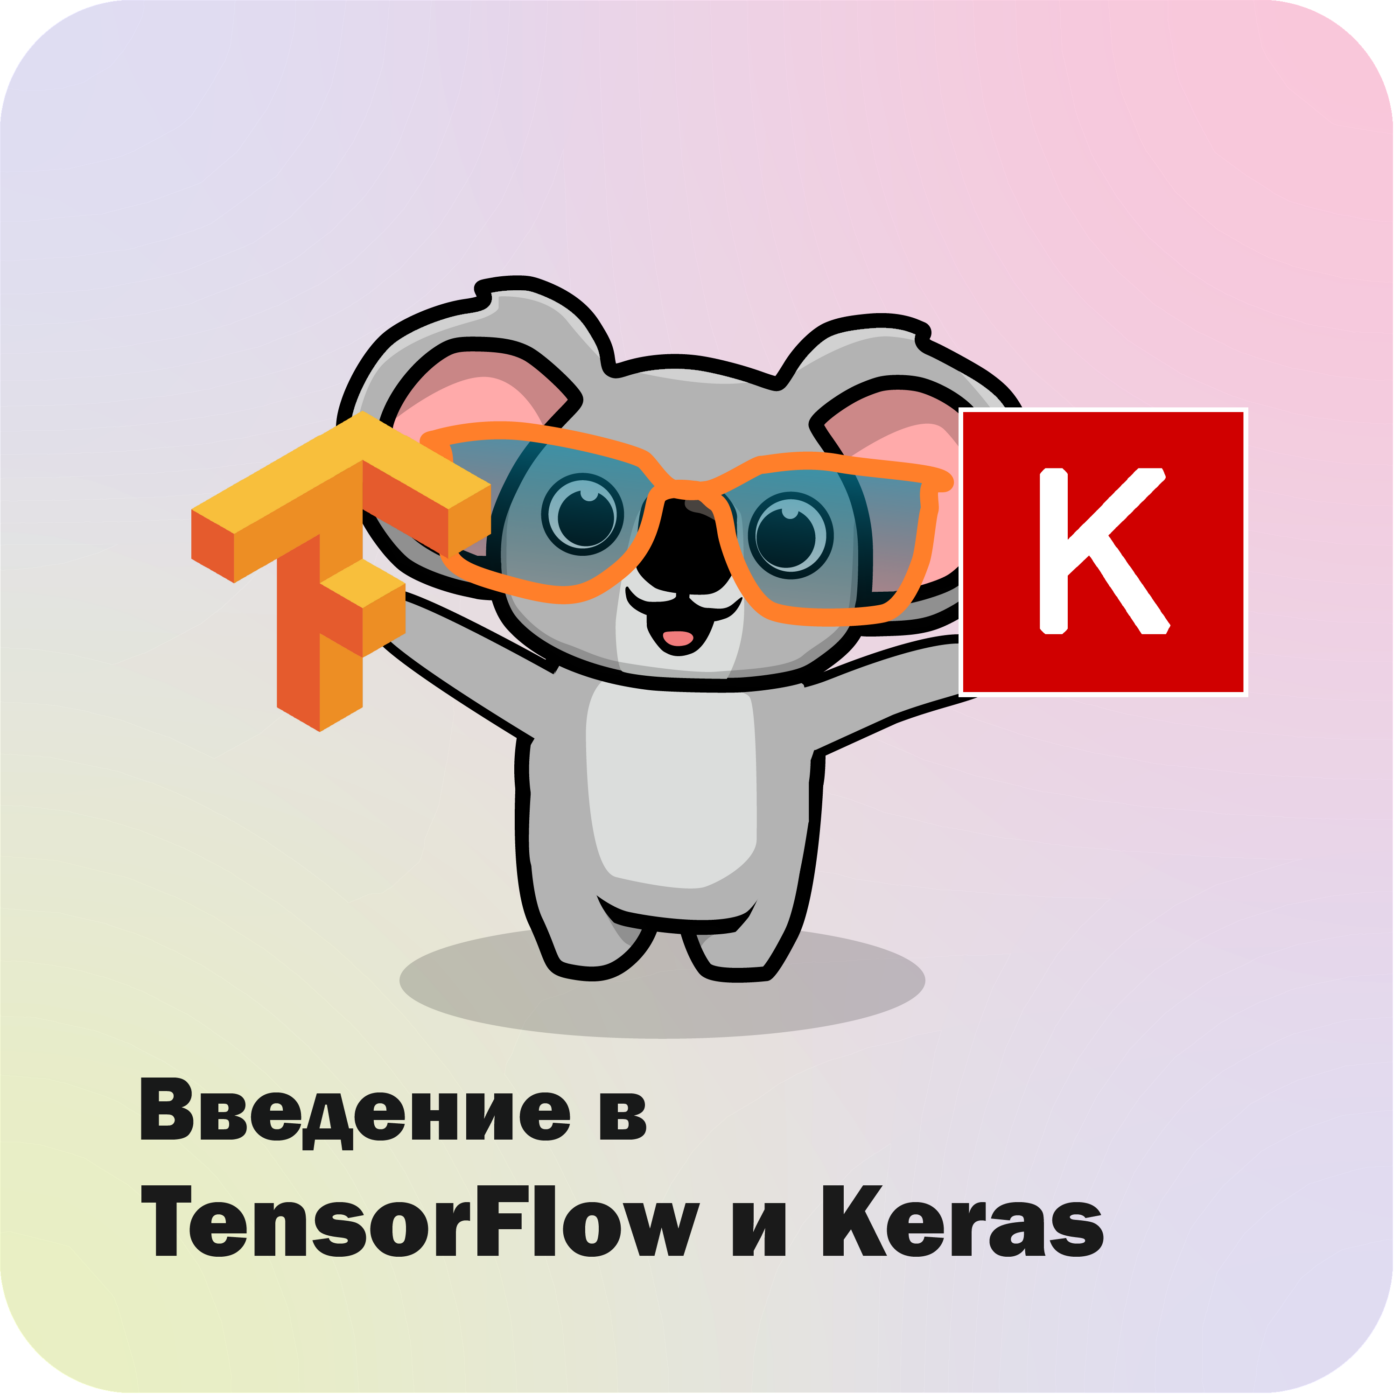 Введение в TensorFlow и Keras